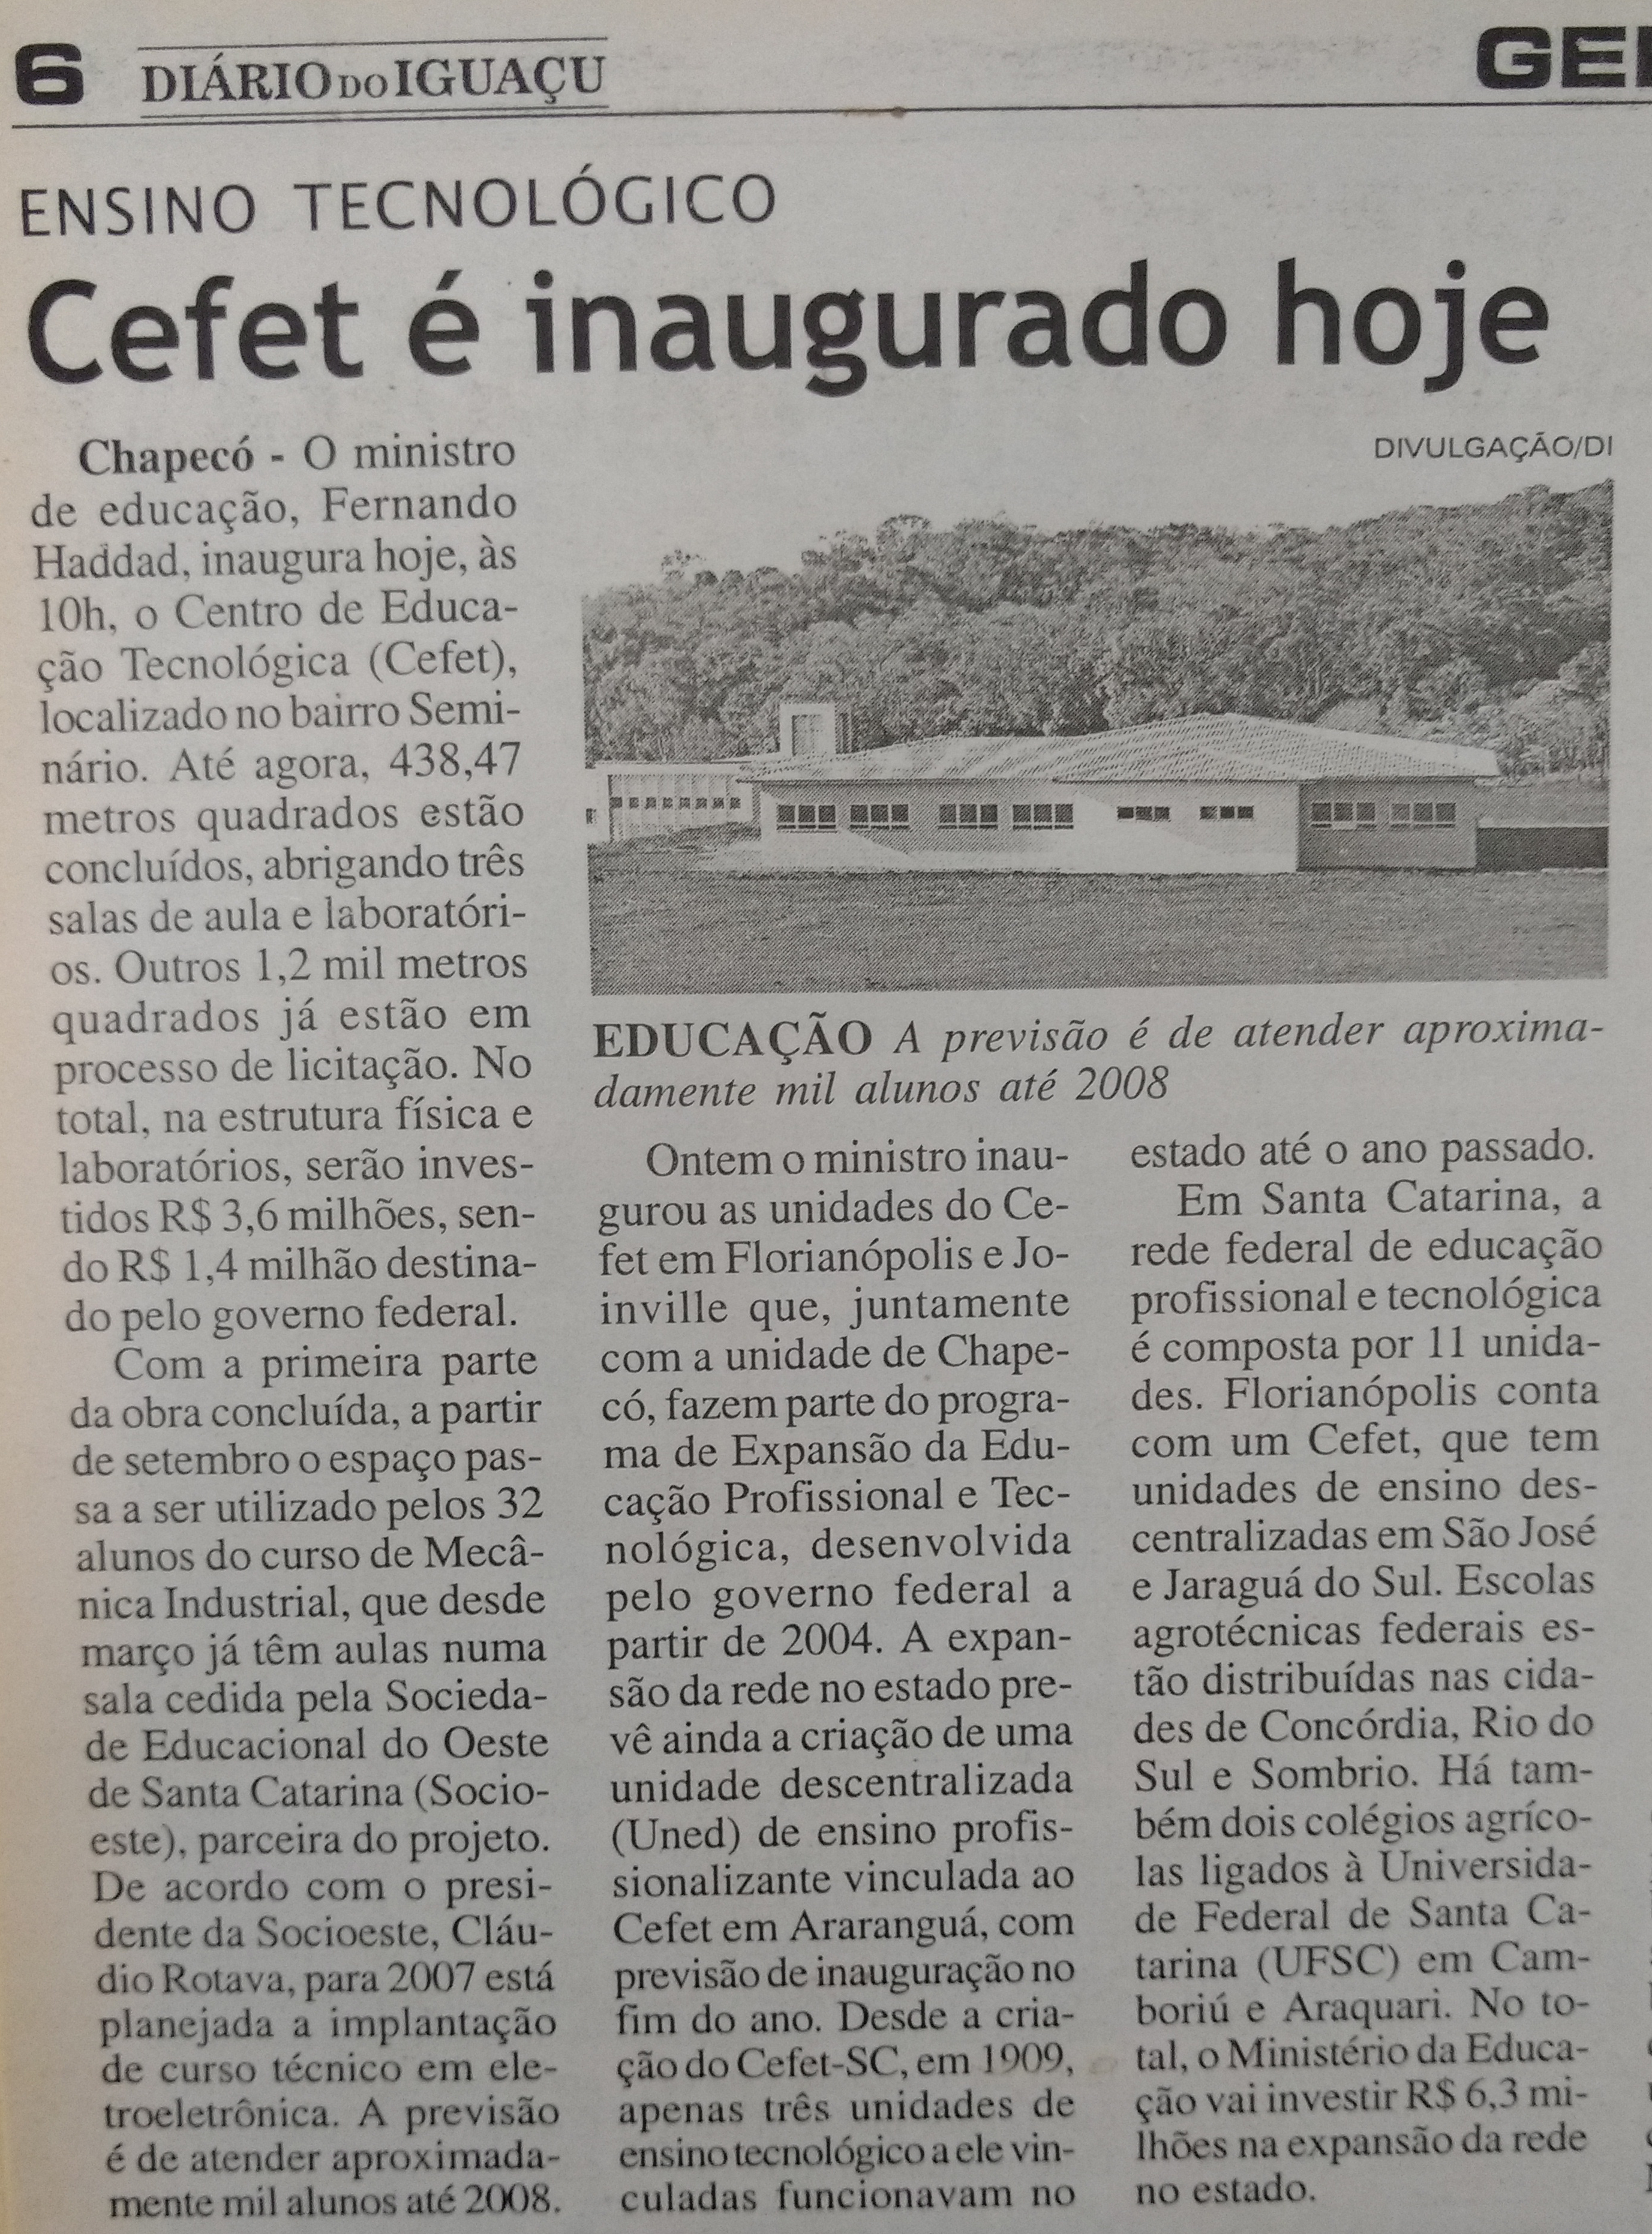 Arquivo do Jornal Diário do Iguaçu de 23 de agosto de 2006